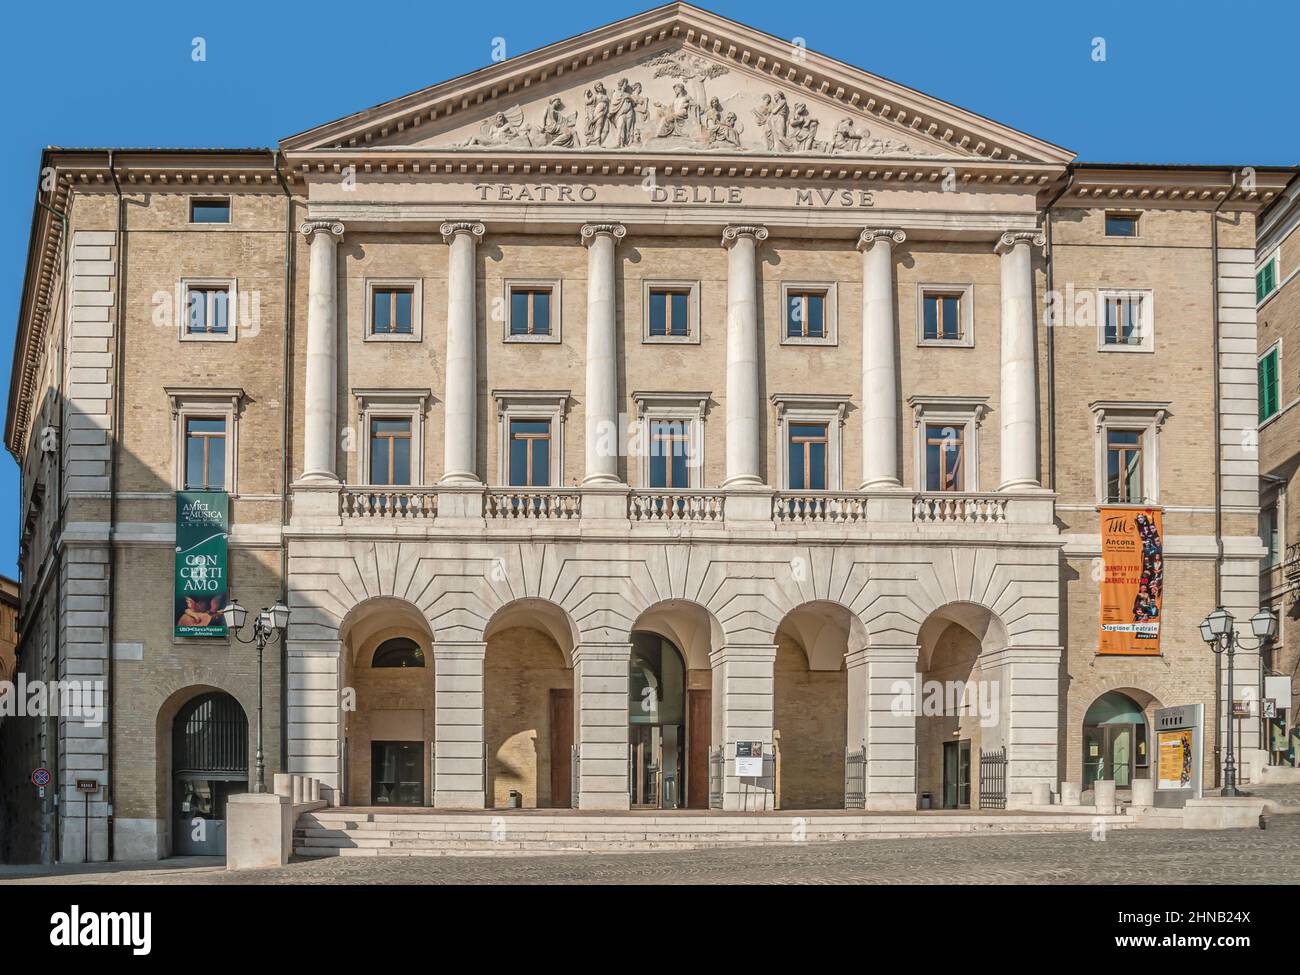 Teatro del Muse dans la vieille ville d'Ancona, Marche, italie Banque D'Images